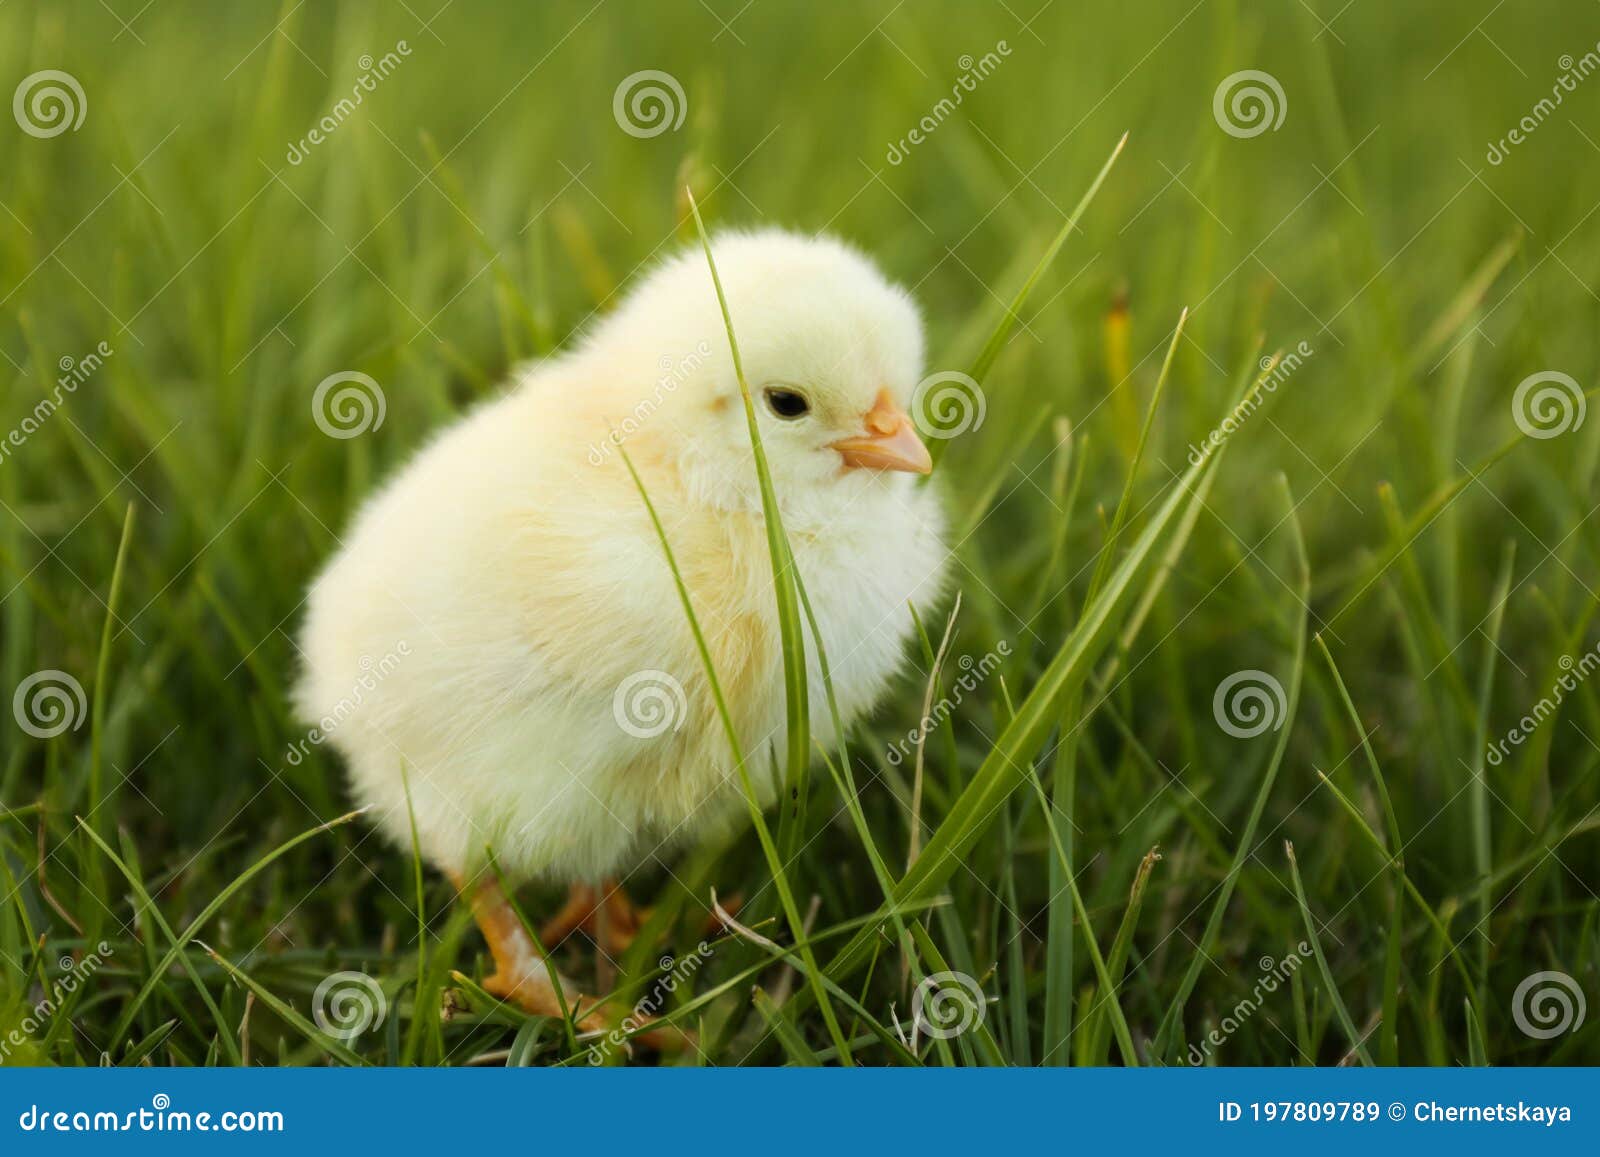 草地上觅食鸡高清摄影大图-千库网